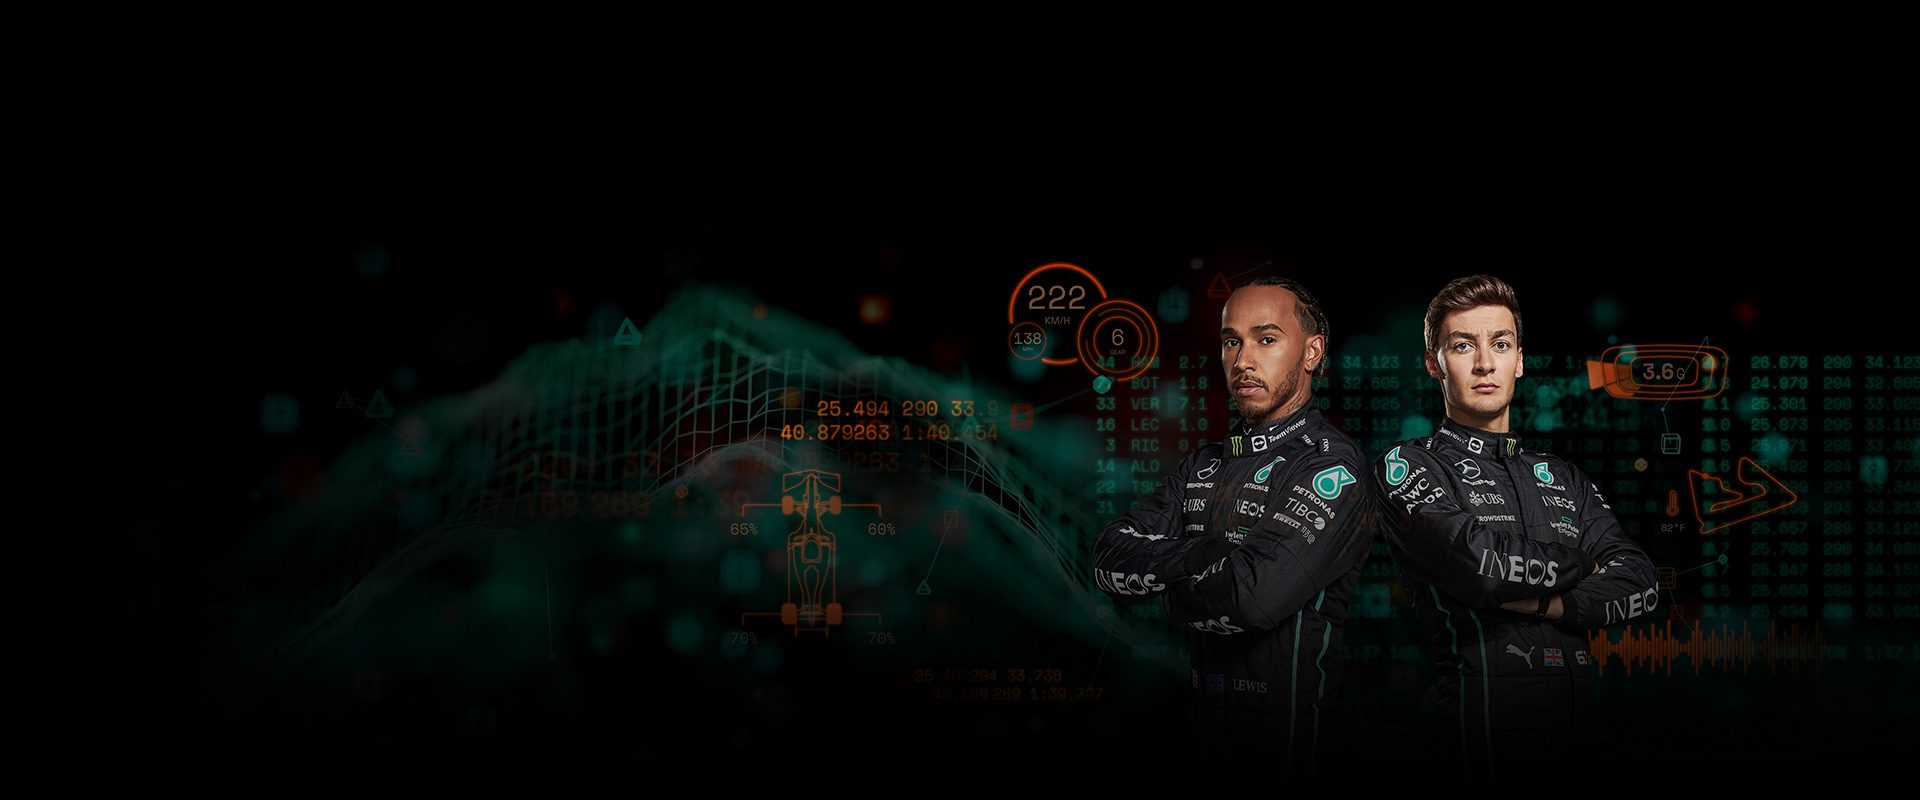 Lewis Hamilton e Valtteri Bottas del team di Mercedes F1